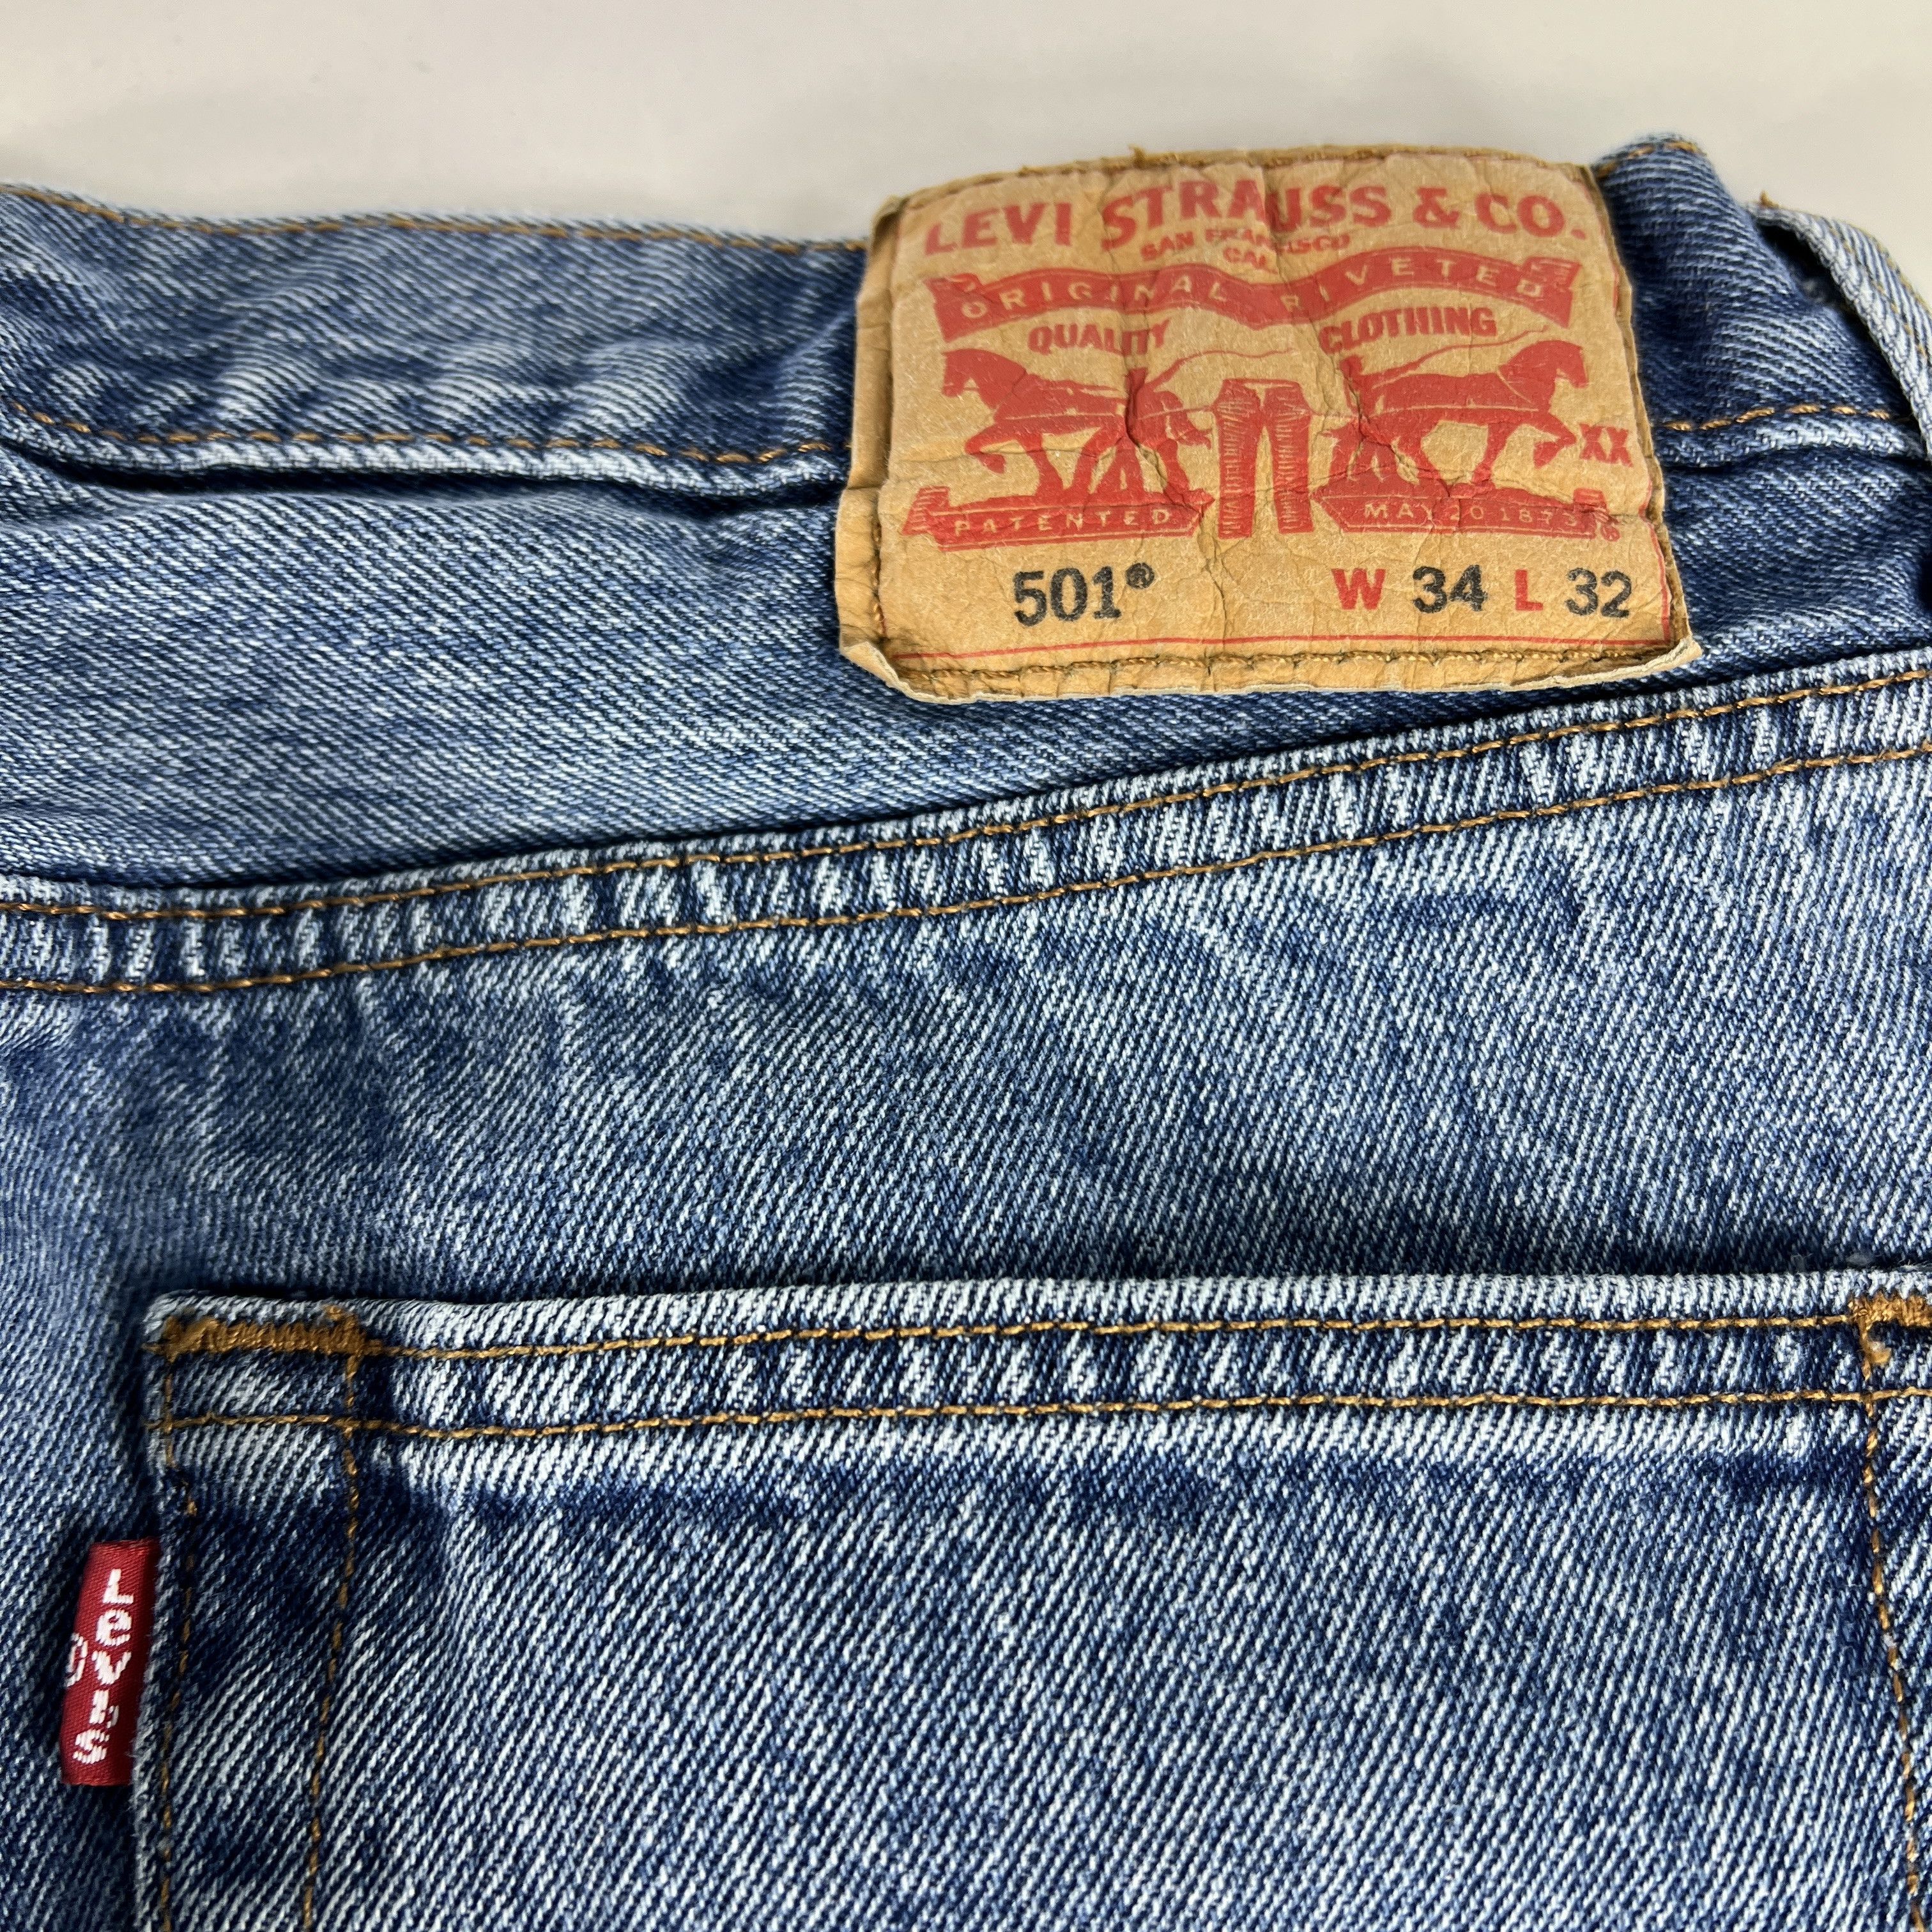 Levi's Levi's Jeans 501 XX Original Straight Blue Cotton Denim Size US 33 - 14 Thumbnail